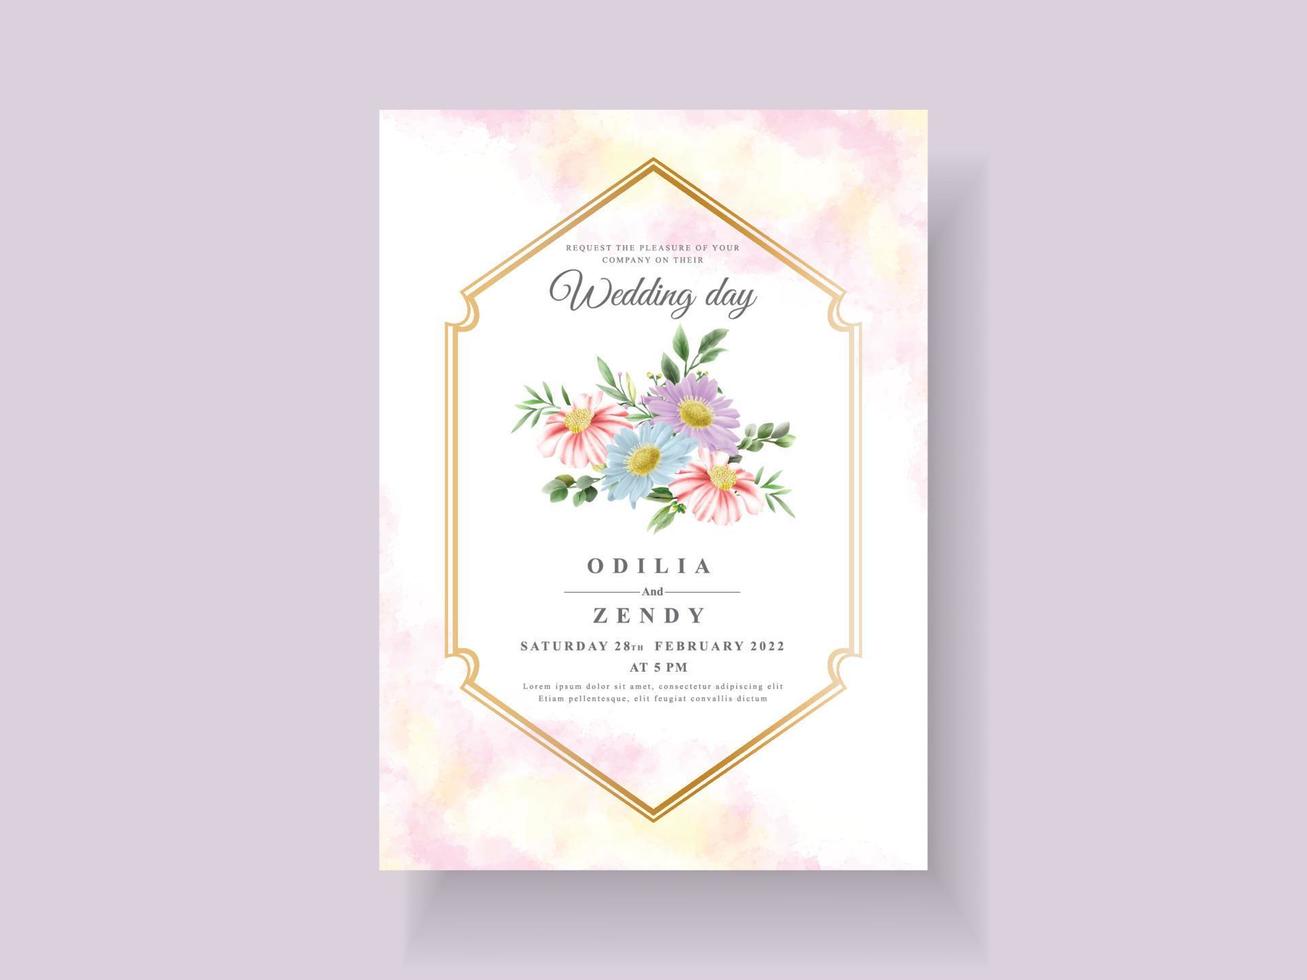 bruiloft uitnodigingskaart met mooie bloem en bladeren aquarel vector